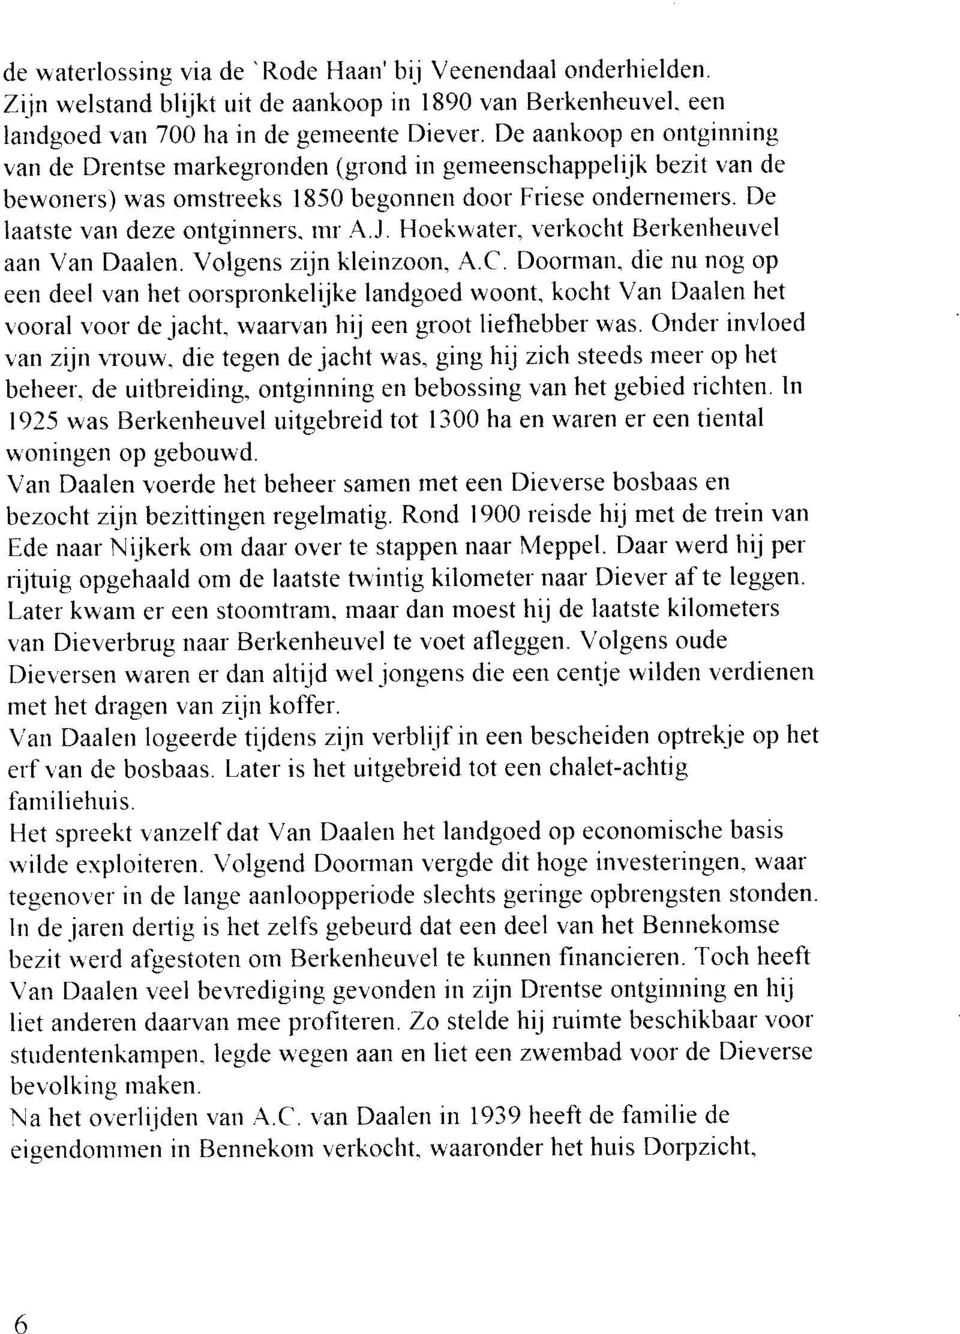 Hoekwater, r'erkocht Berkenheuvel aan Van Daalen. Volgens zijn kletnzoon, A.C. Doonnan. die nu nog op een deel van het oorspronkeliike landgoed woont. kocht Van Daalen het vooral r.